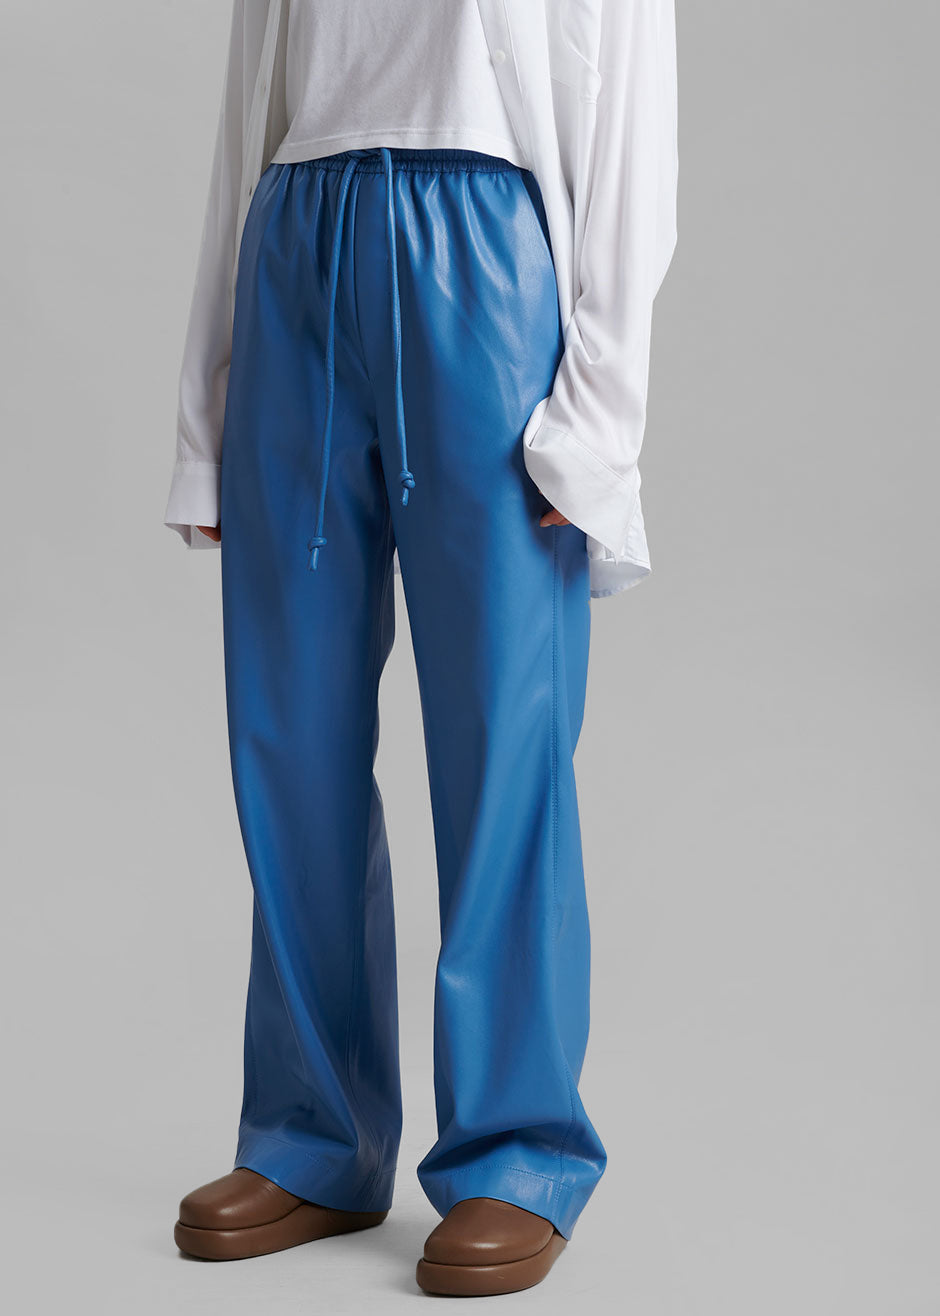 Nanushka Calie Vegan Leather Pants - Blue - 6